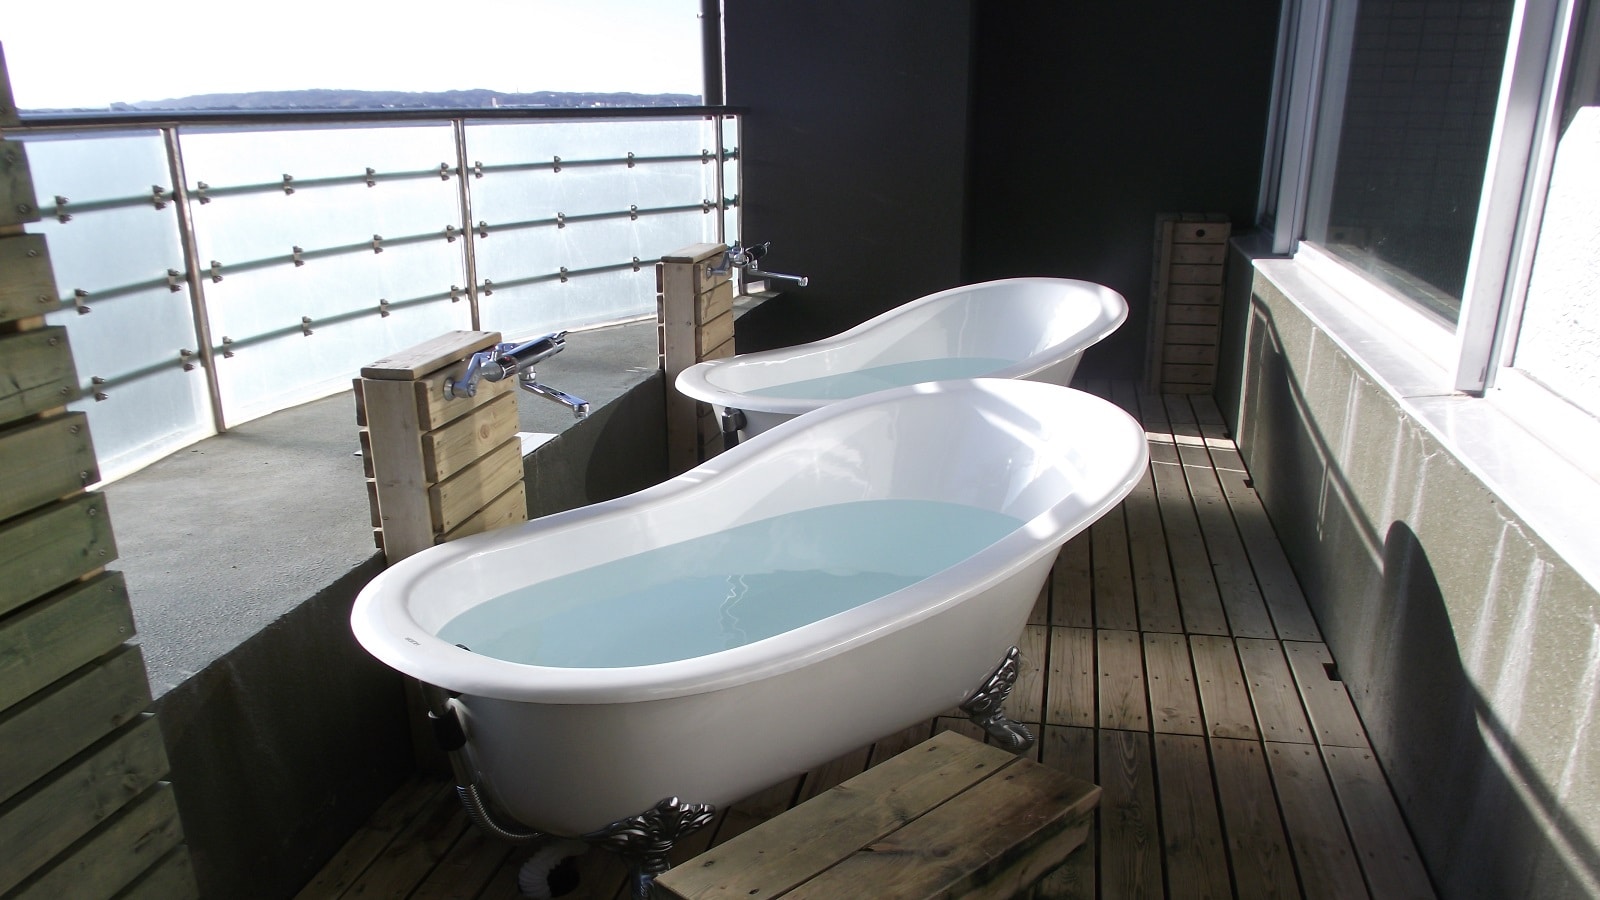 [Open-air bath] A bath for each person is prepared as an aerial open-air bath on the terrace of the large communal bath.